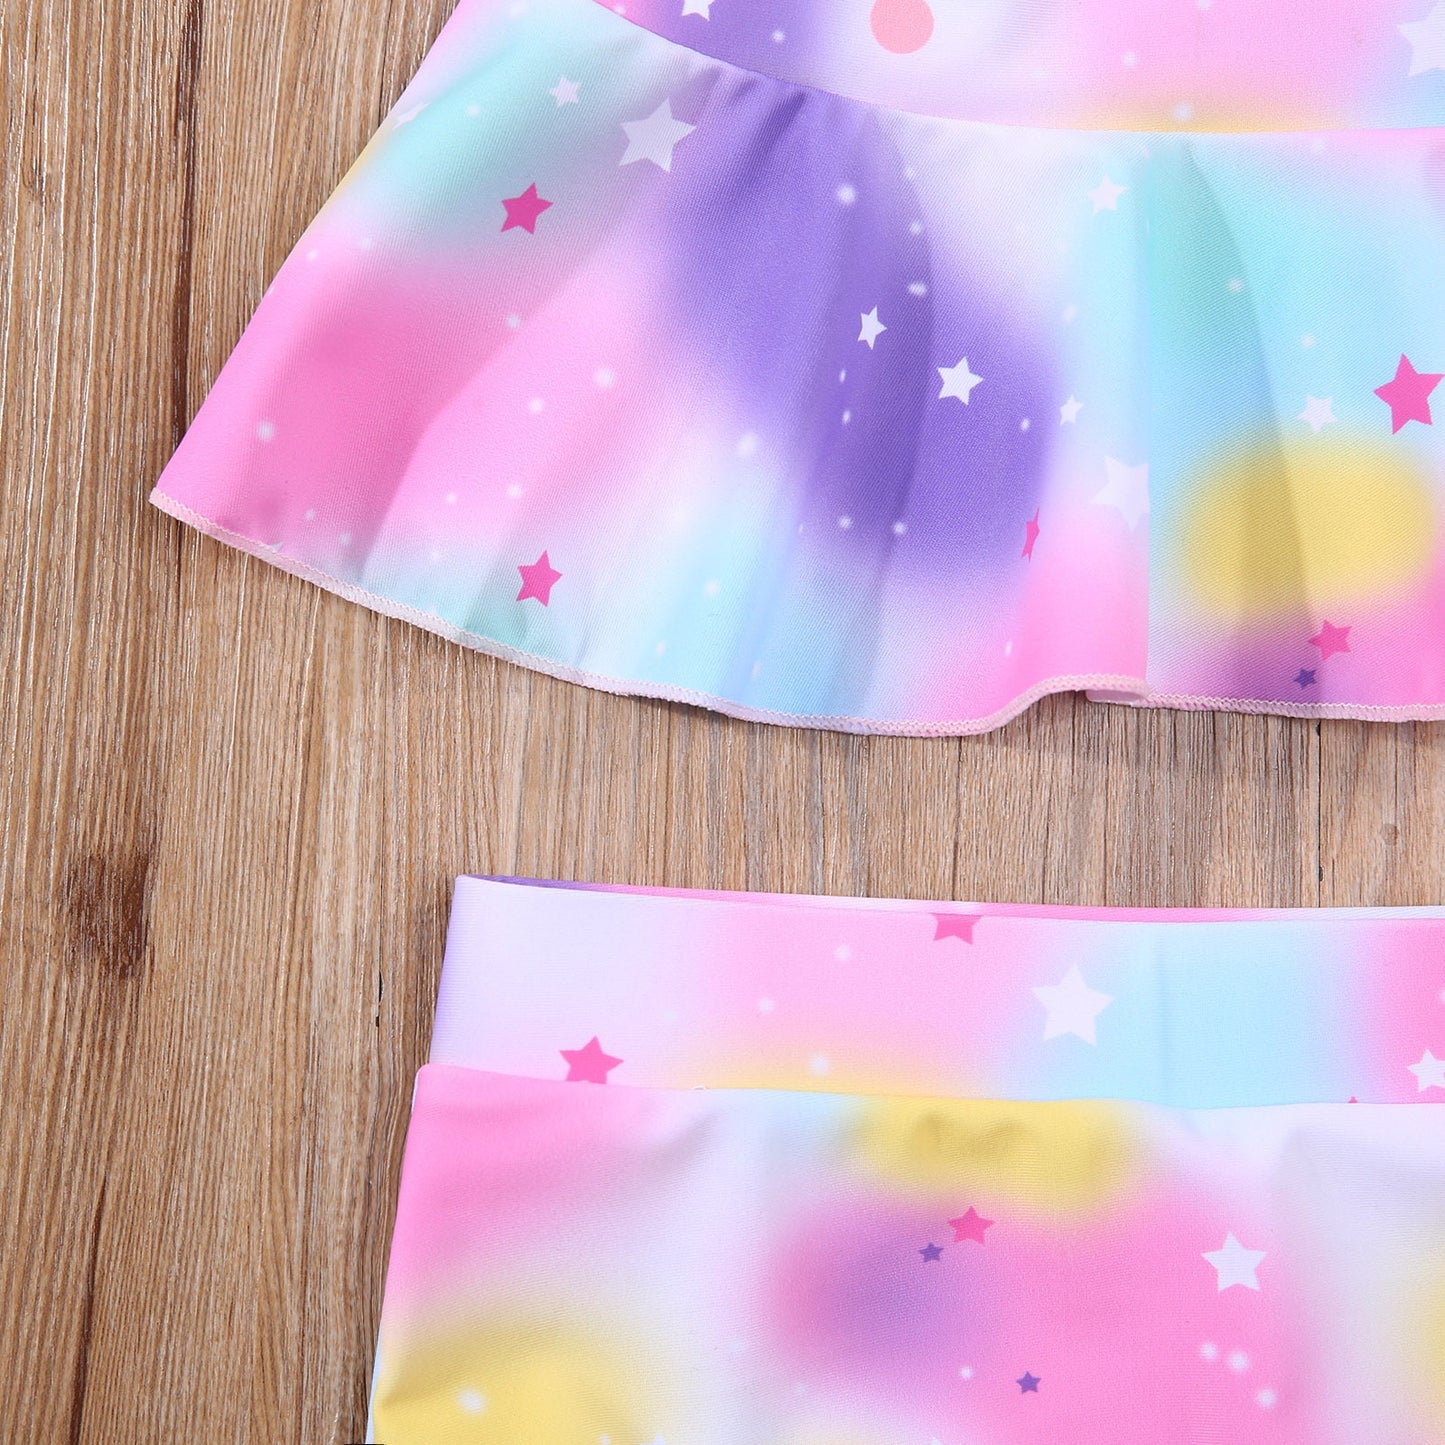 Baby Girls Unicorn Printed Ruffle Beachwear Swimsuit